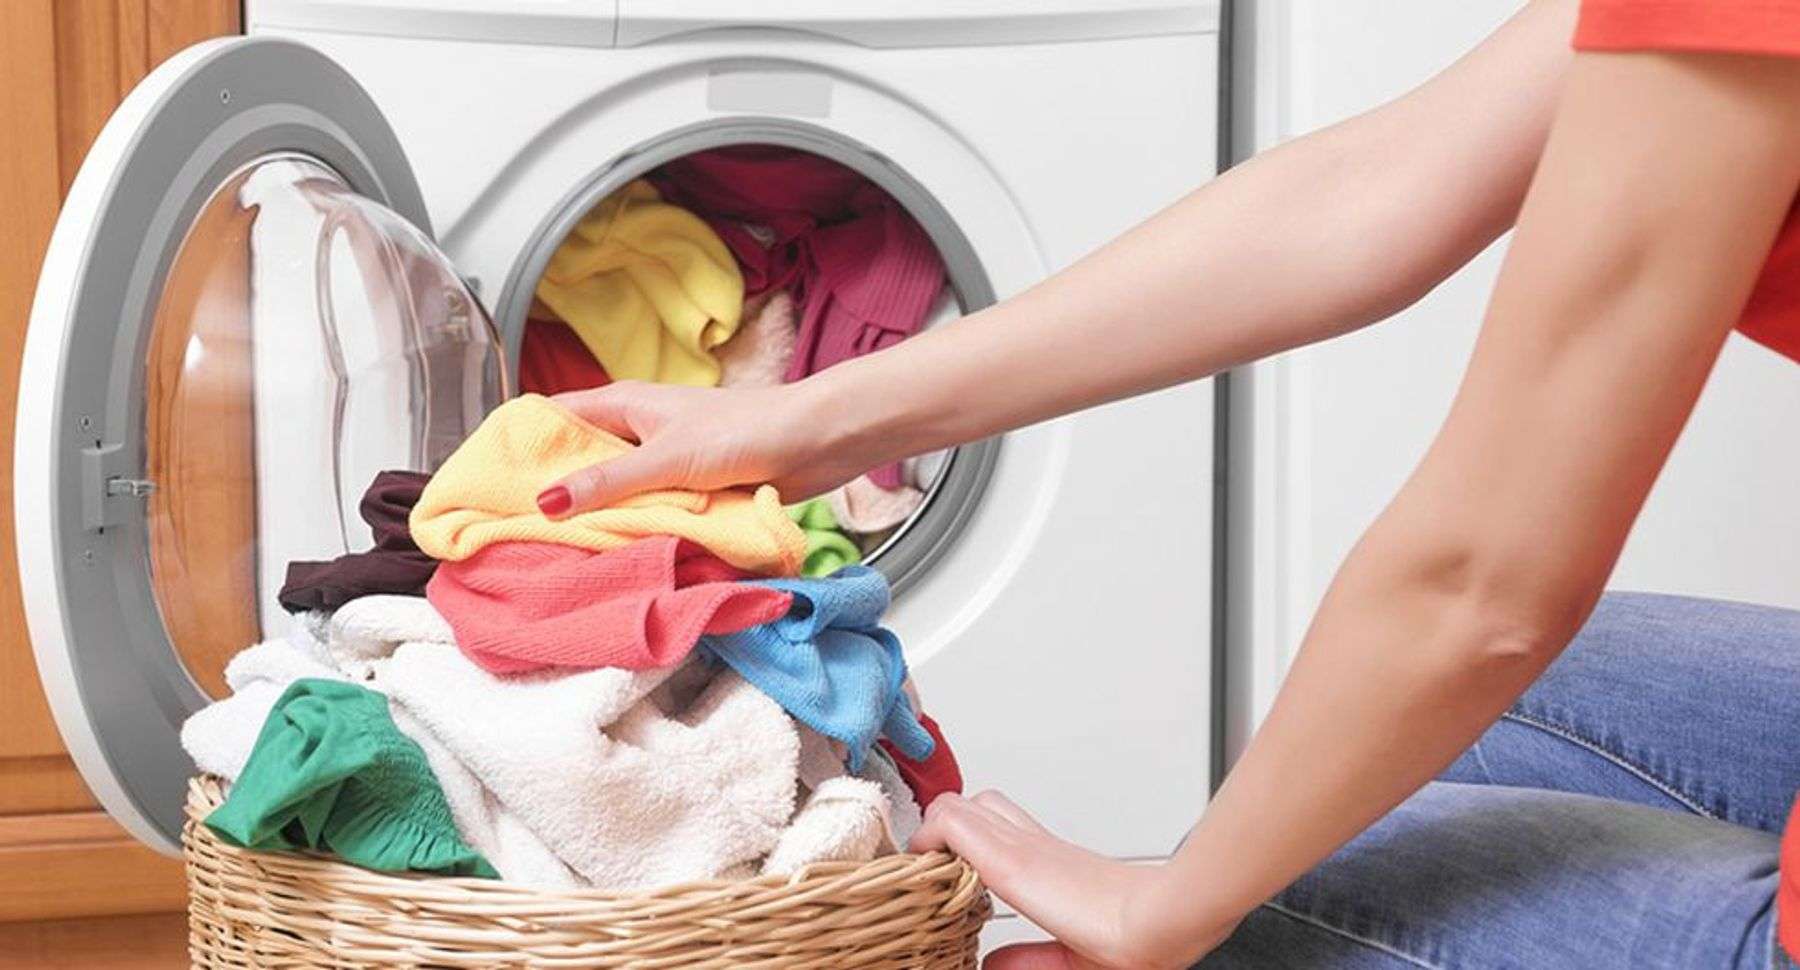 Quần áo sau khi giặt bị cứng đơ lại rất có thể là do bỏ quá nhiều xà phòng hoặc dùng sai loại xà phòng lúc giặt